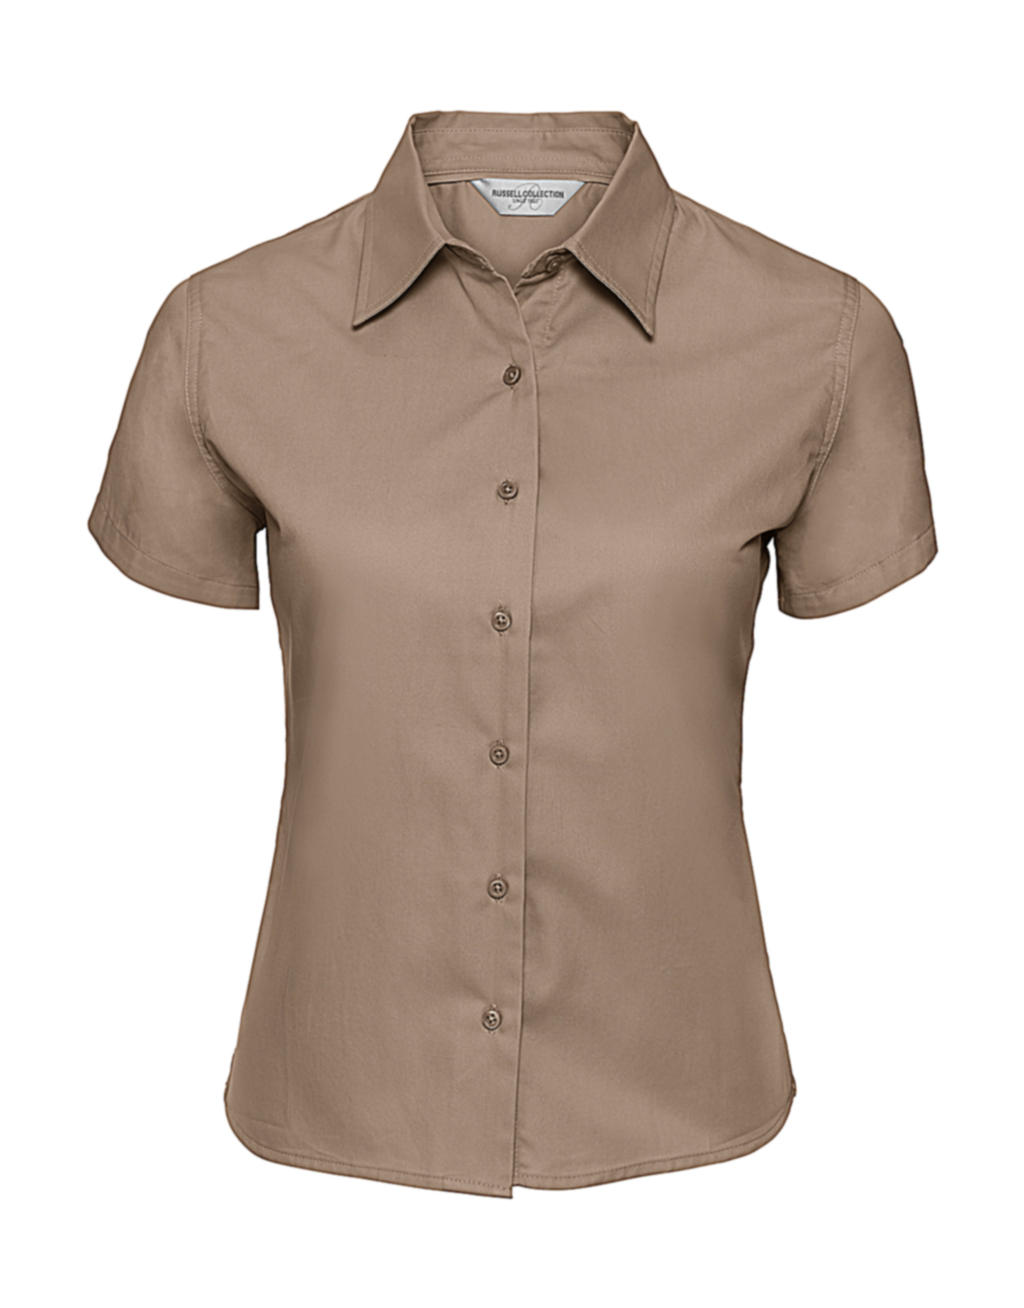  Ladies Classic Twill Shirt  in Farbe Khaki